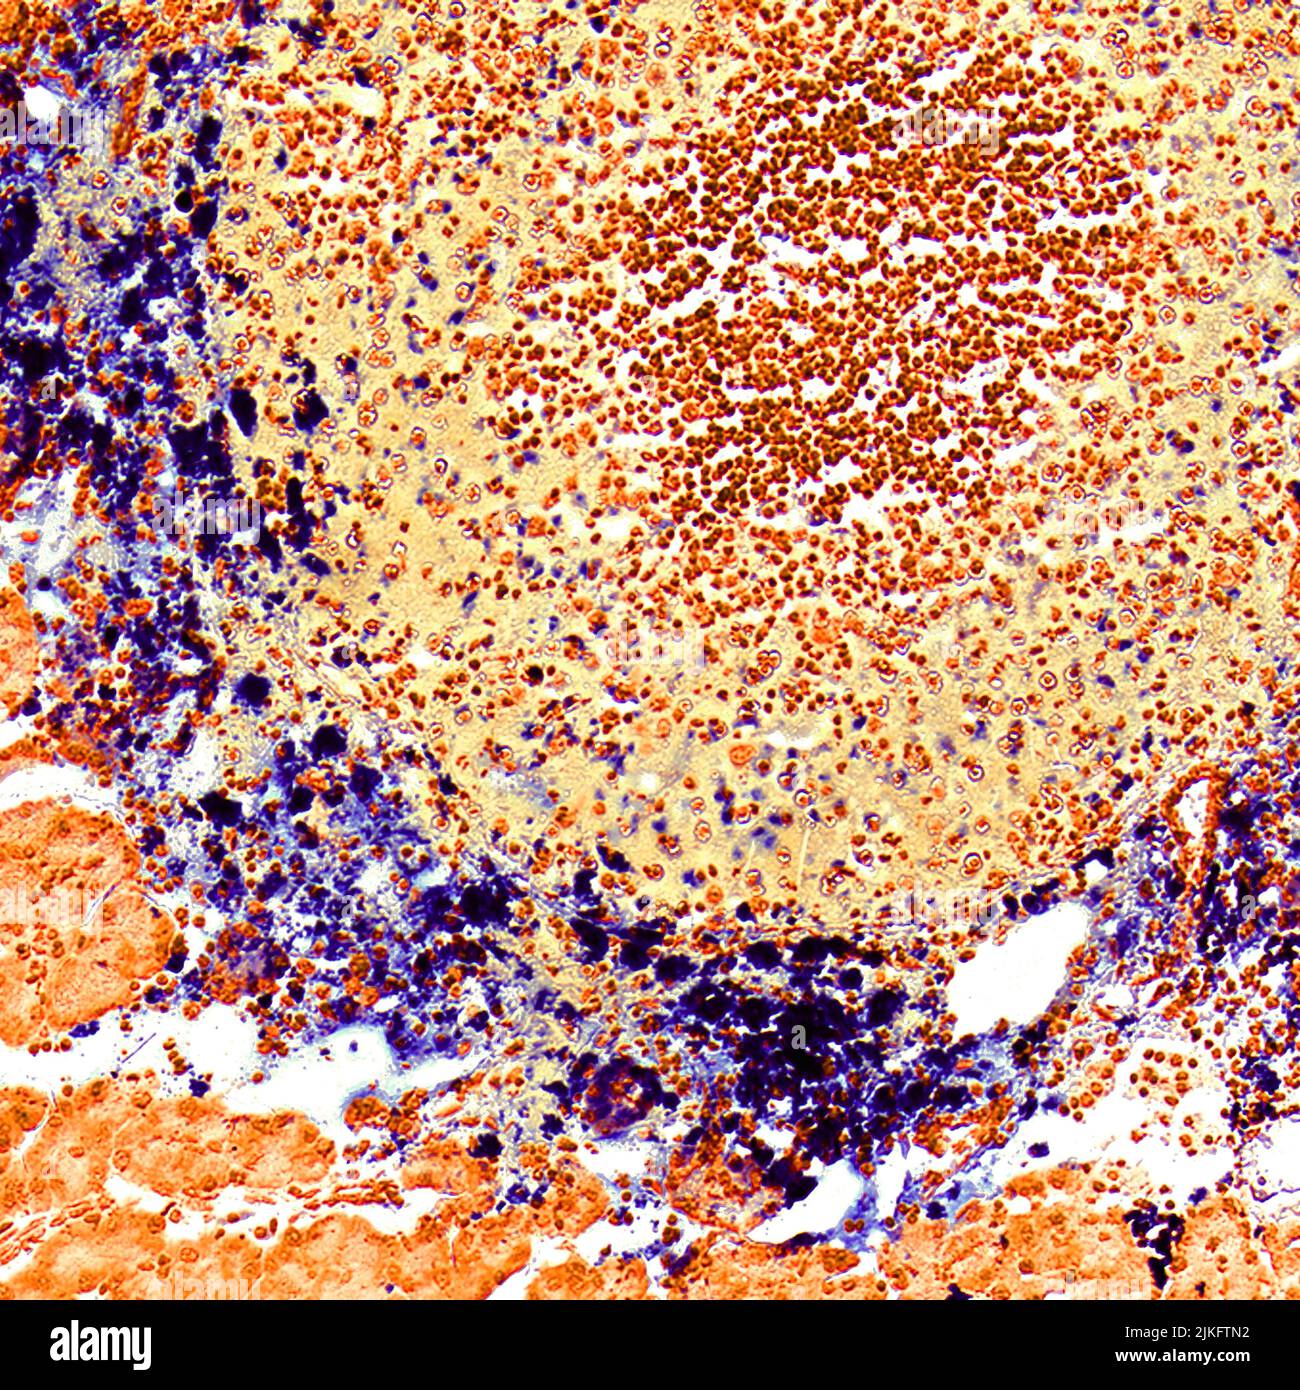 Gli investigatori del Cancer Nanotechnology Platform Partnership (CNPP) presso l'Emory University hanno sviluppato nanoparticelle di ossido di ferro magnetico mirate al tumore per la terapia del cancro pancreatico guidata da immagini. Le nanoparticelle erogano agenti terapeutici nei tumori del cancro pancreatico e producono segnali che possono essere rintracciati mediante risonanza magnetica (MRI). Questa immagine in microscopia di una sezione tumorale (ottenuta da un modello di tumore di topo) mostra le nanoparticelle colorate in blu che si accumulano selettivamente nell'area periferica del tumore e quindi penetrano nelle cellule tumorali. Foto Stock